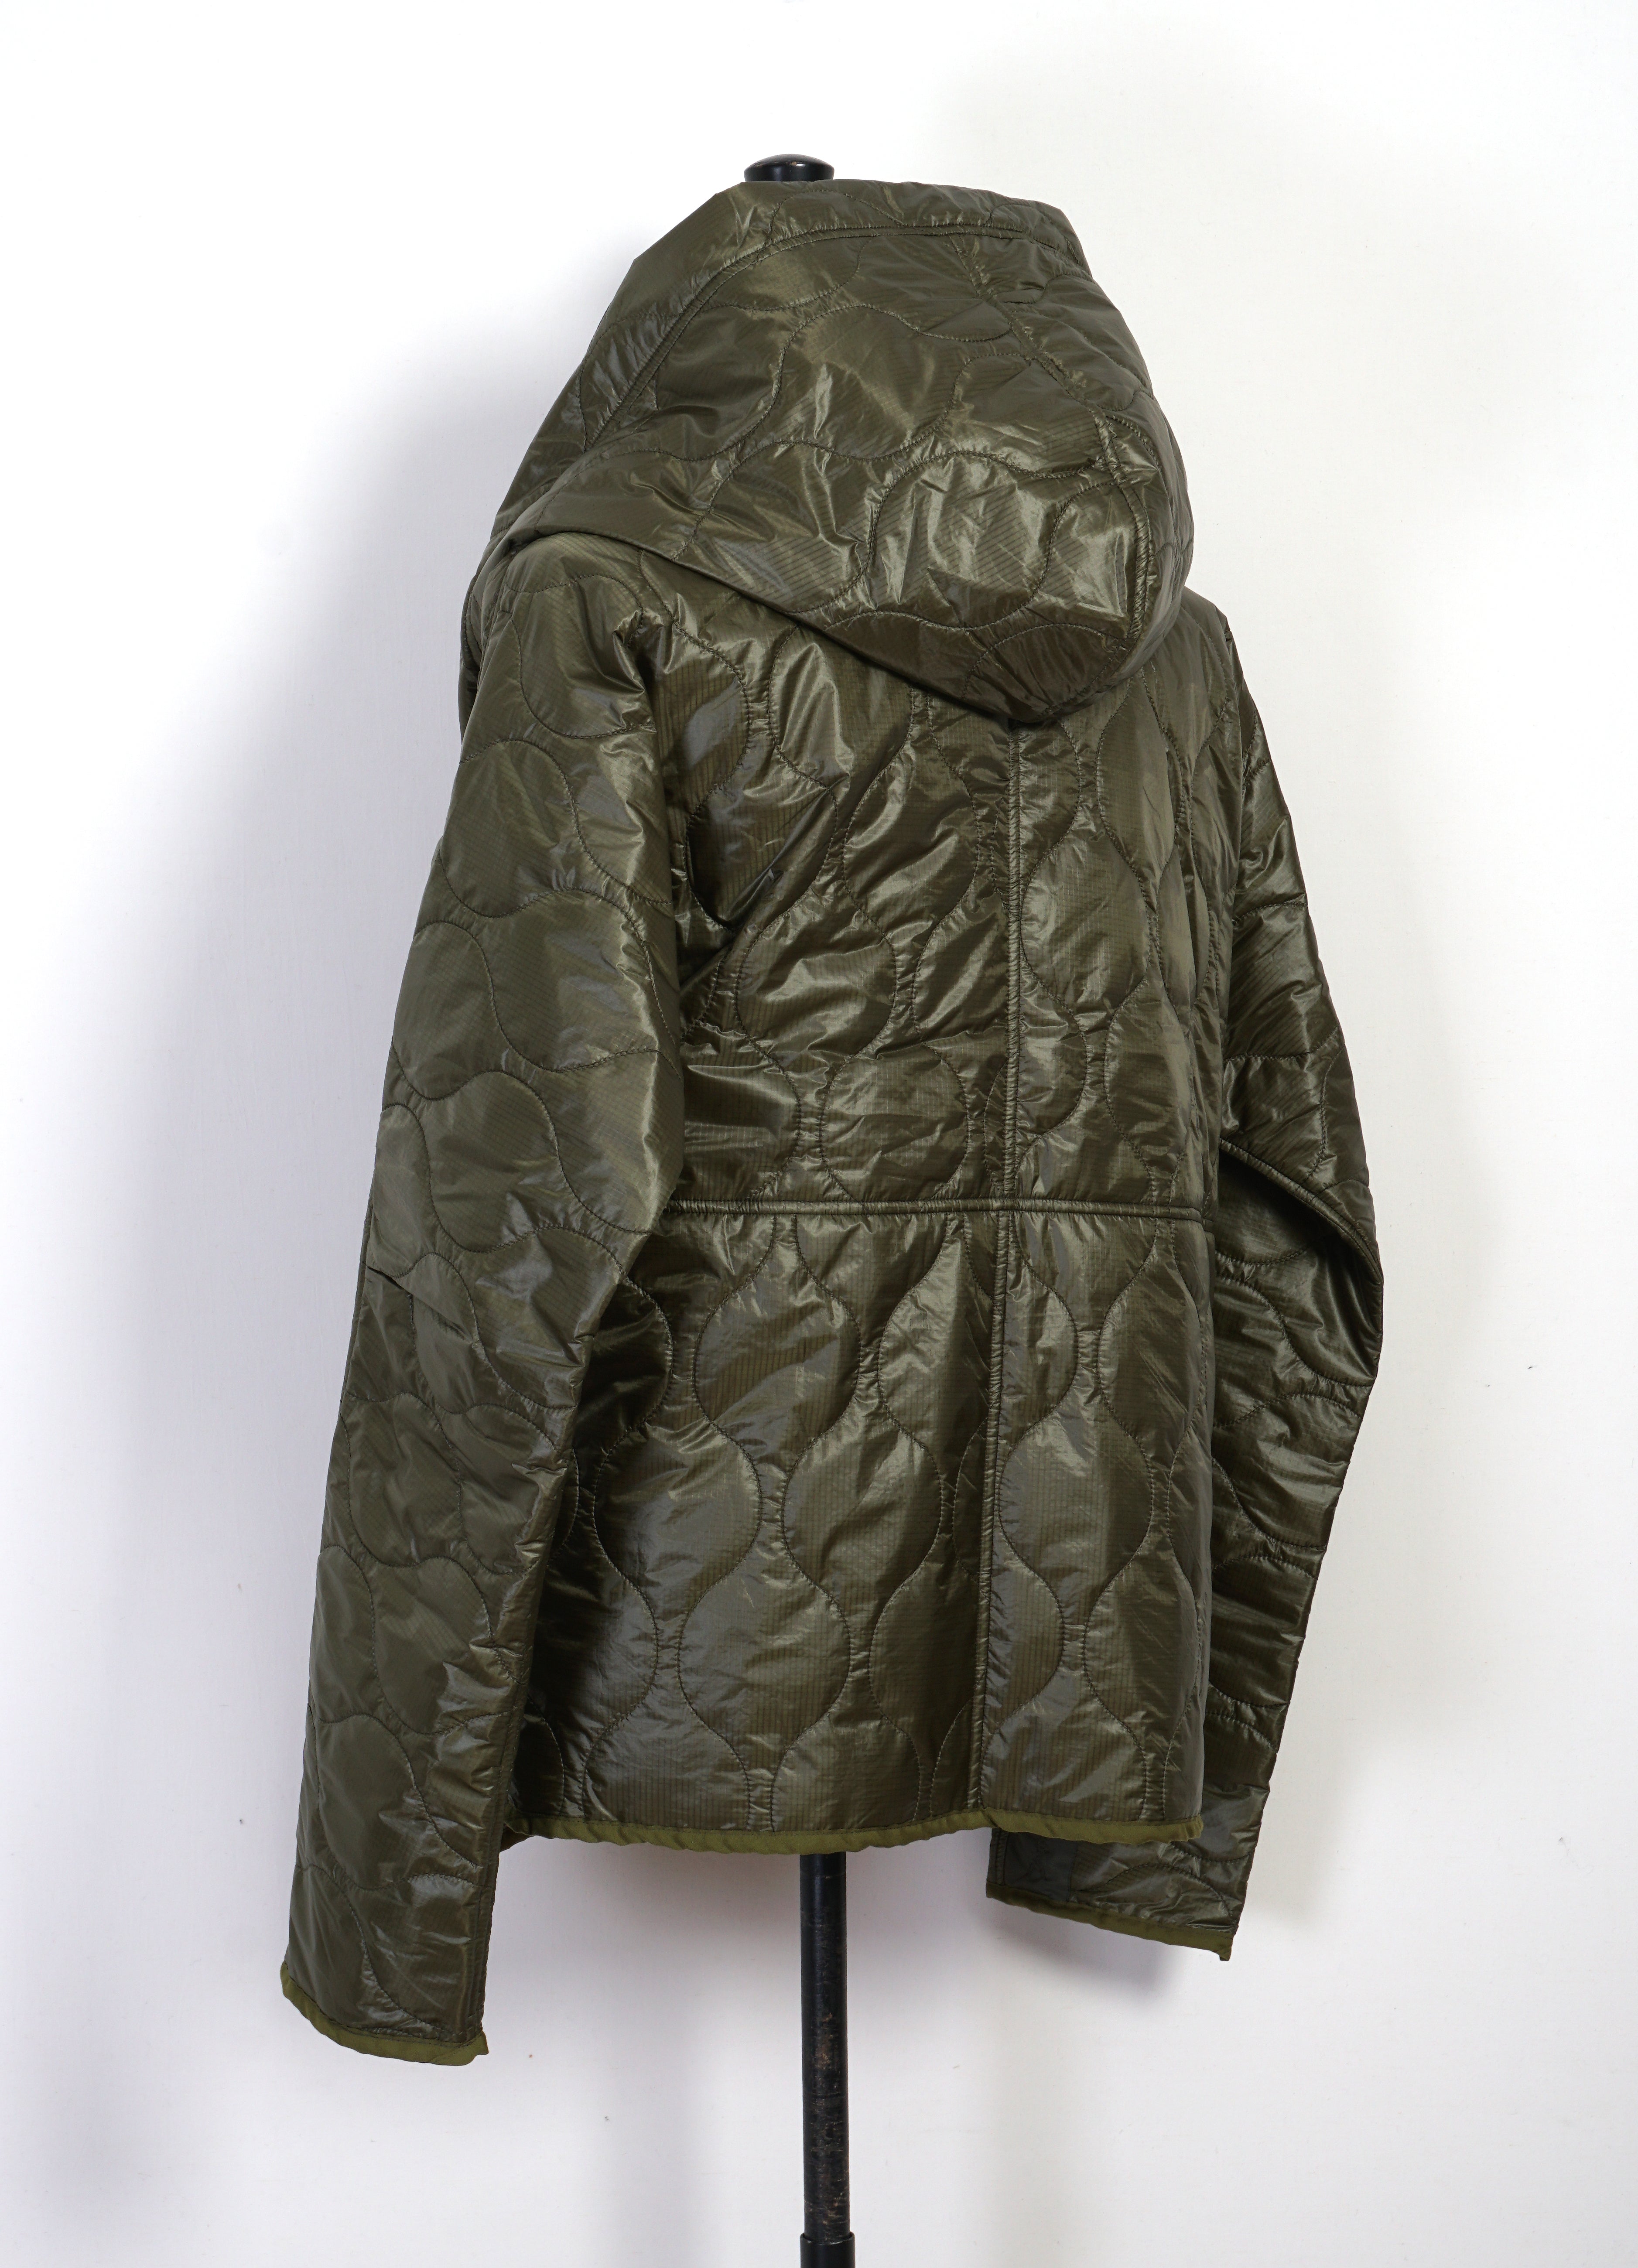 RING COAT | Quilted Nylon Jacket | Khaki